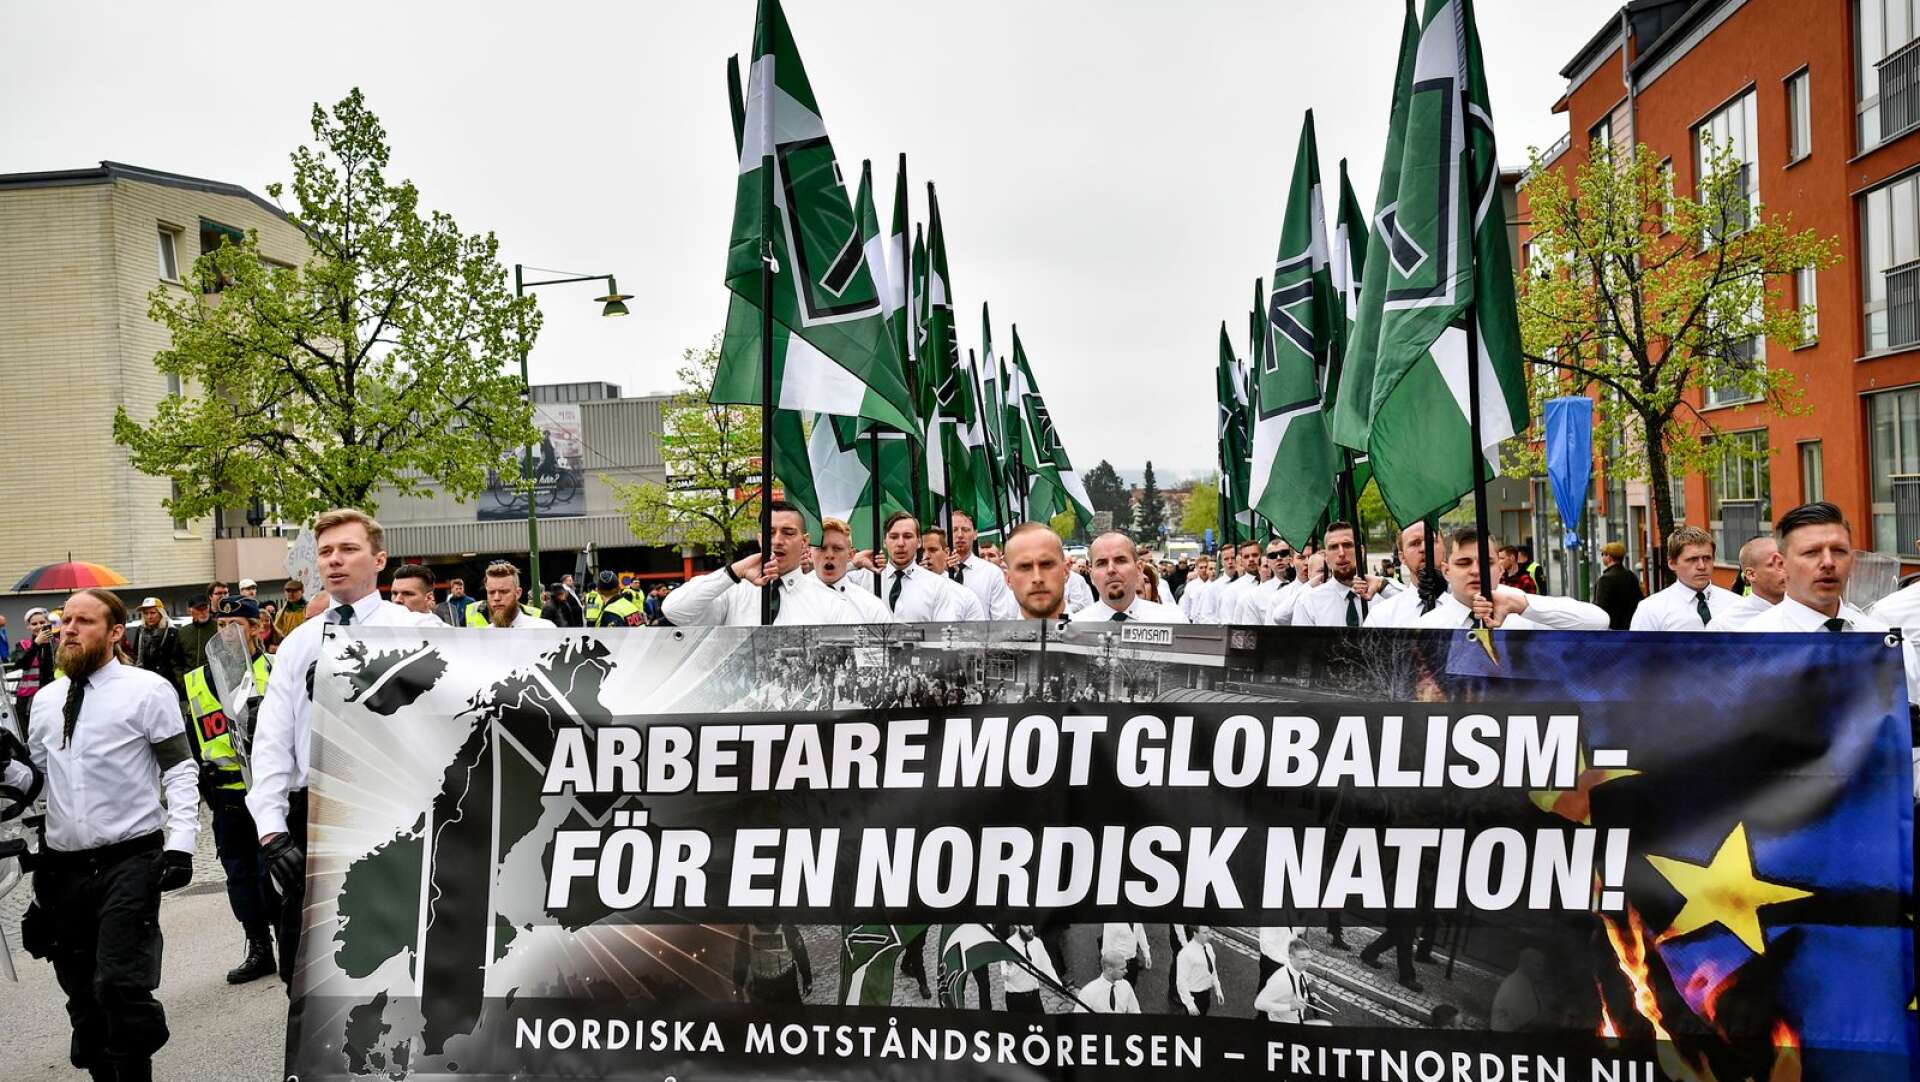 Nazistiska organisationen Nordiska motståndsrörelsen vid en demonstration i Kungälv. Genrebild.